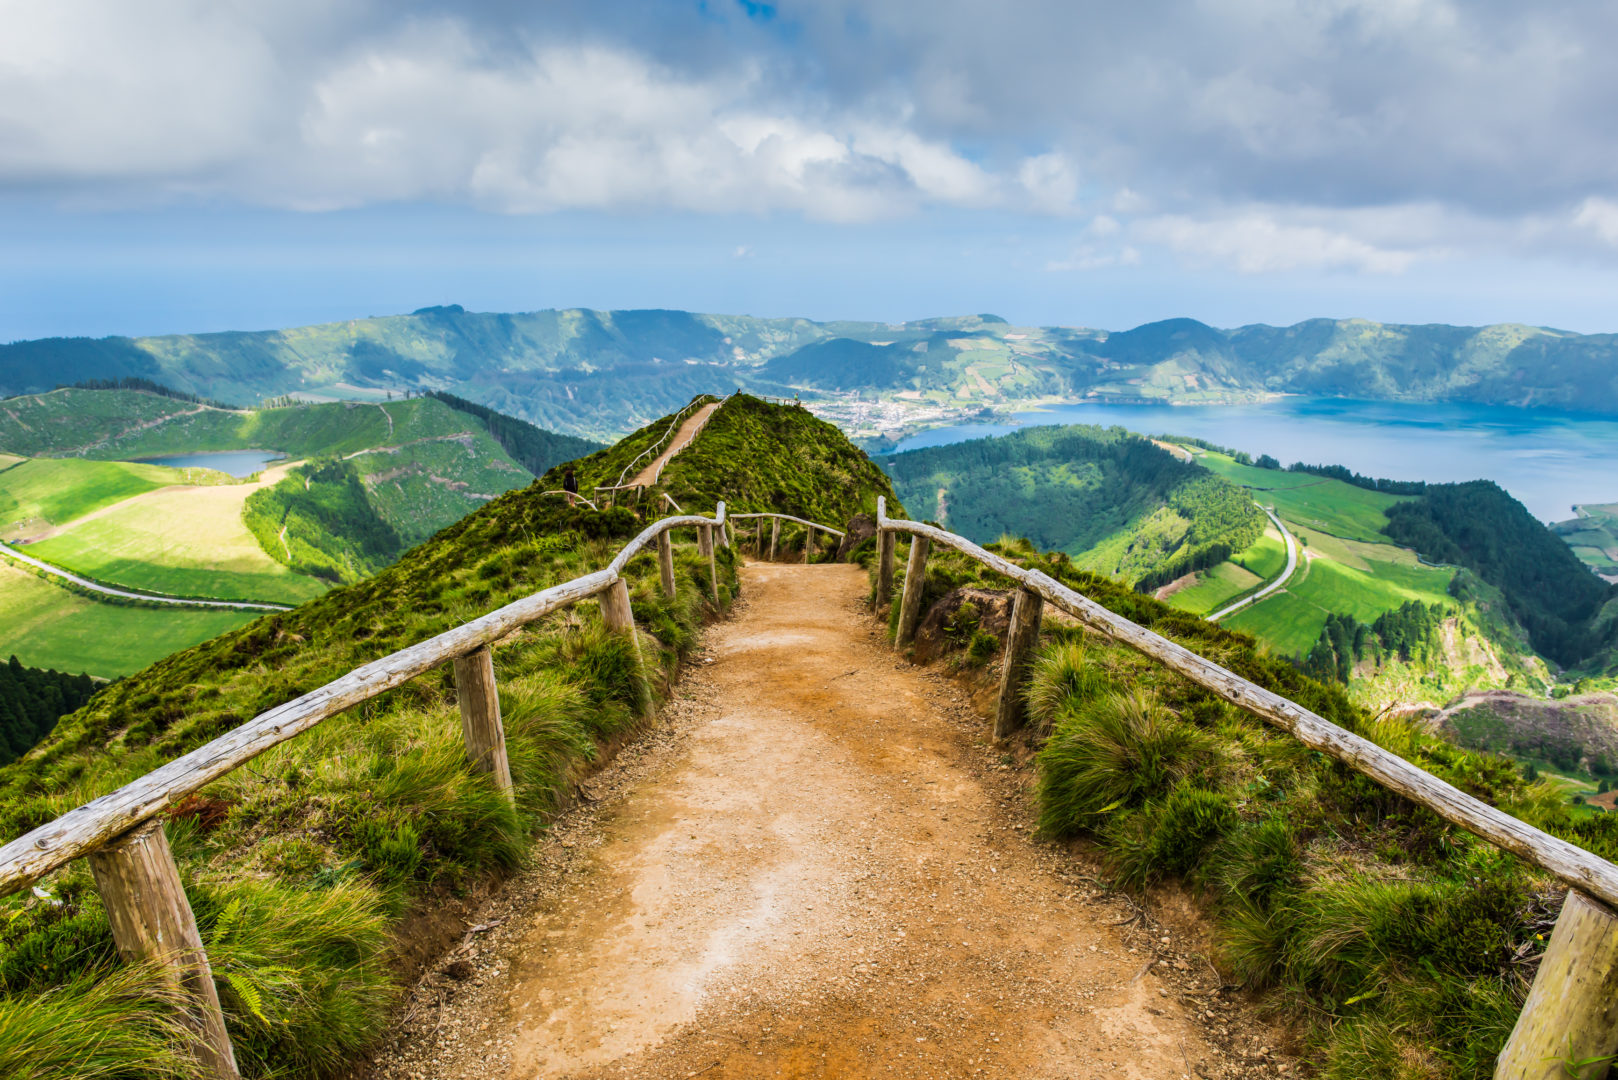 Point de vue Pico do Carvao, voyage aux Açores